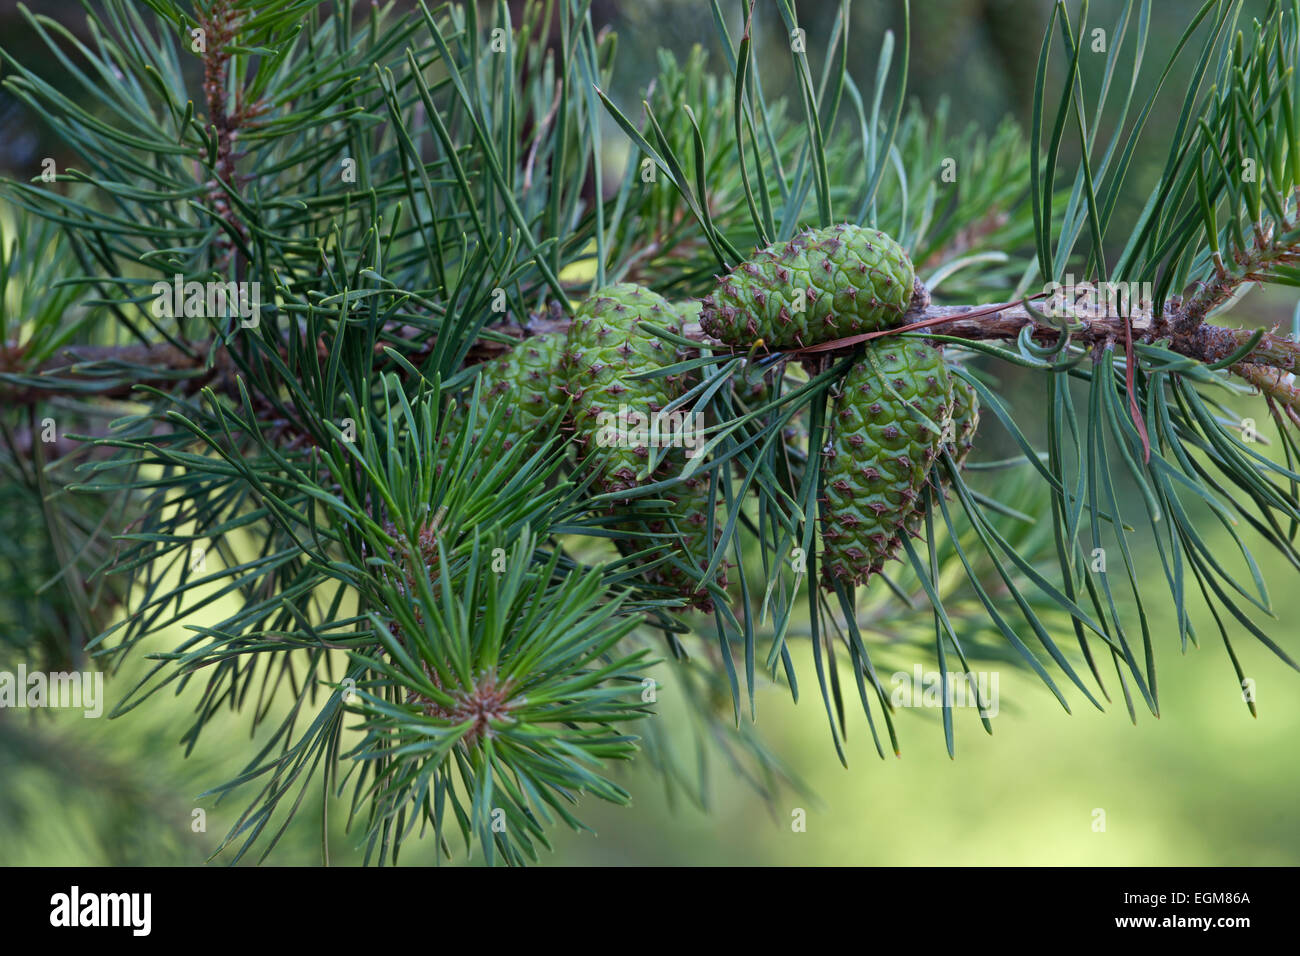 Virginia pine (Pinus virginiana). Stock Photo